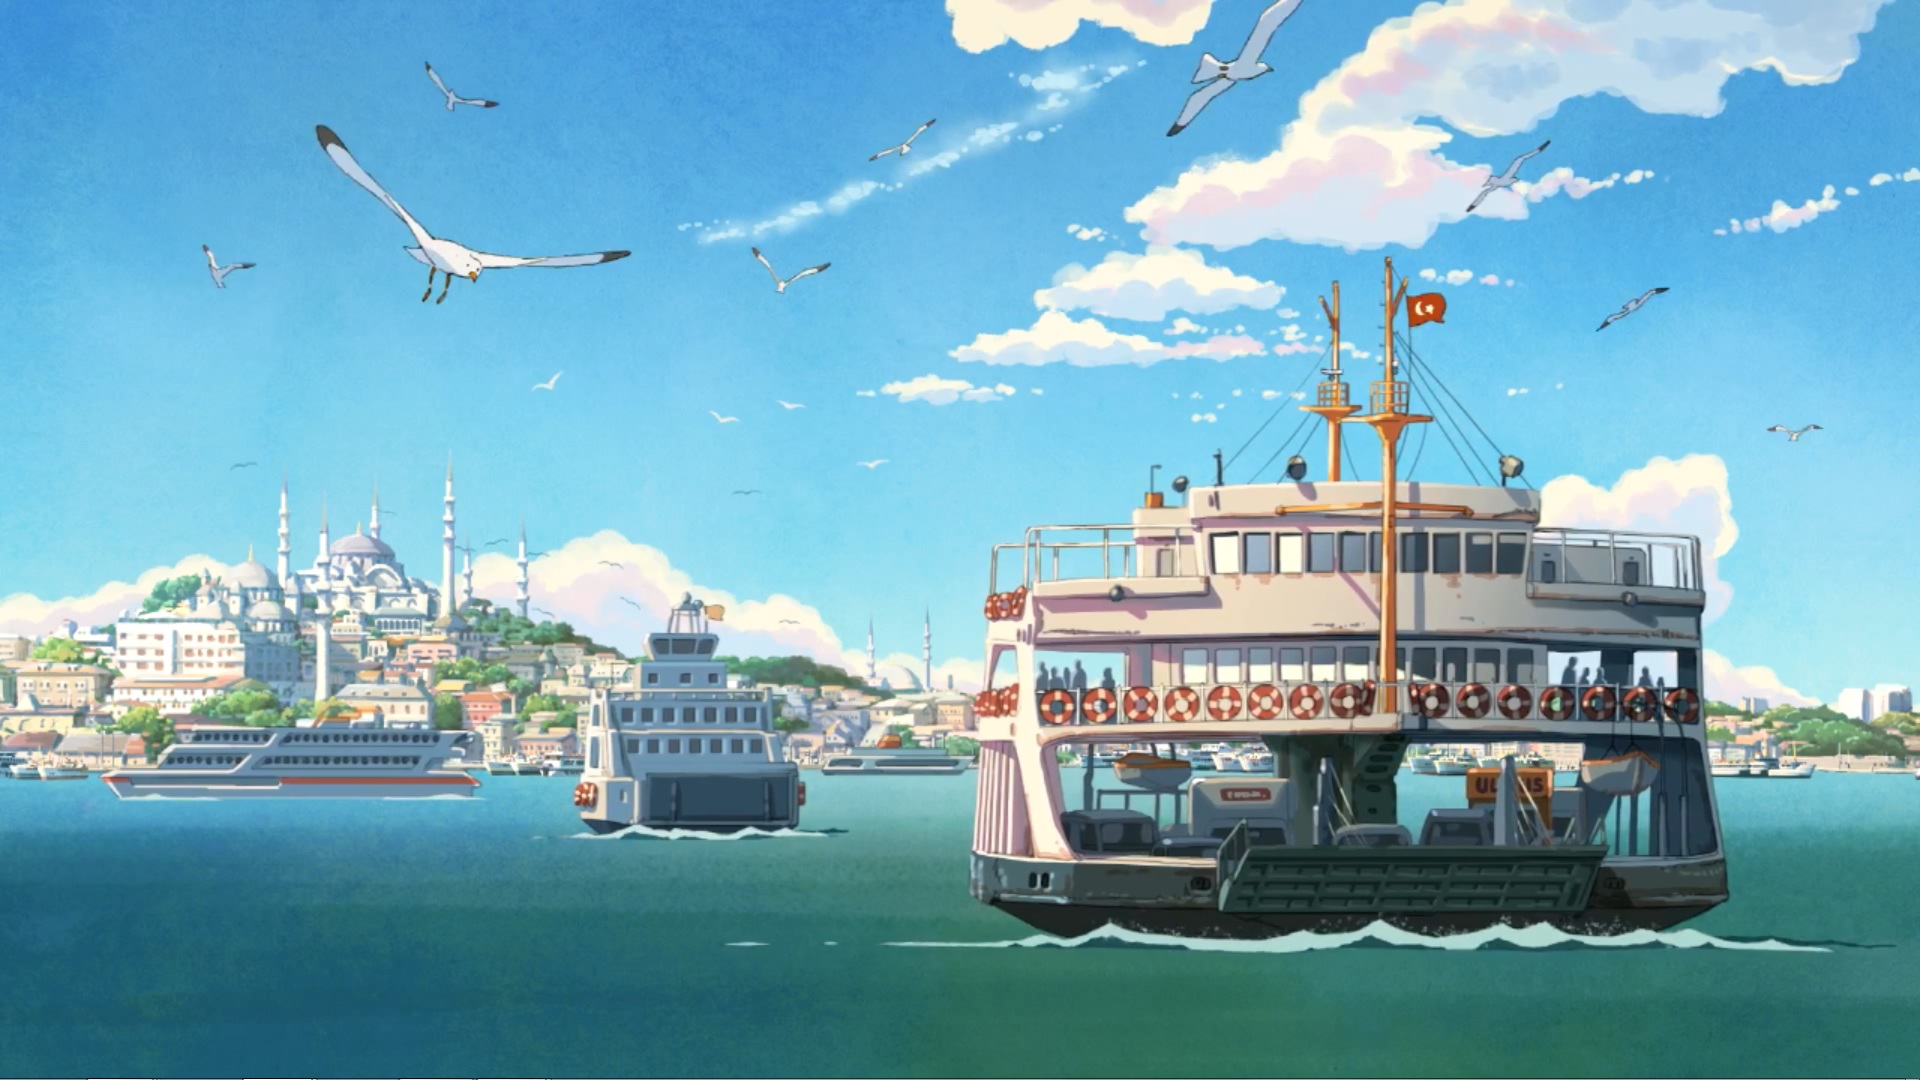 Anime Ship Wallpapers